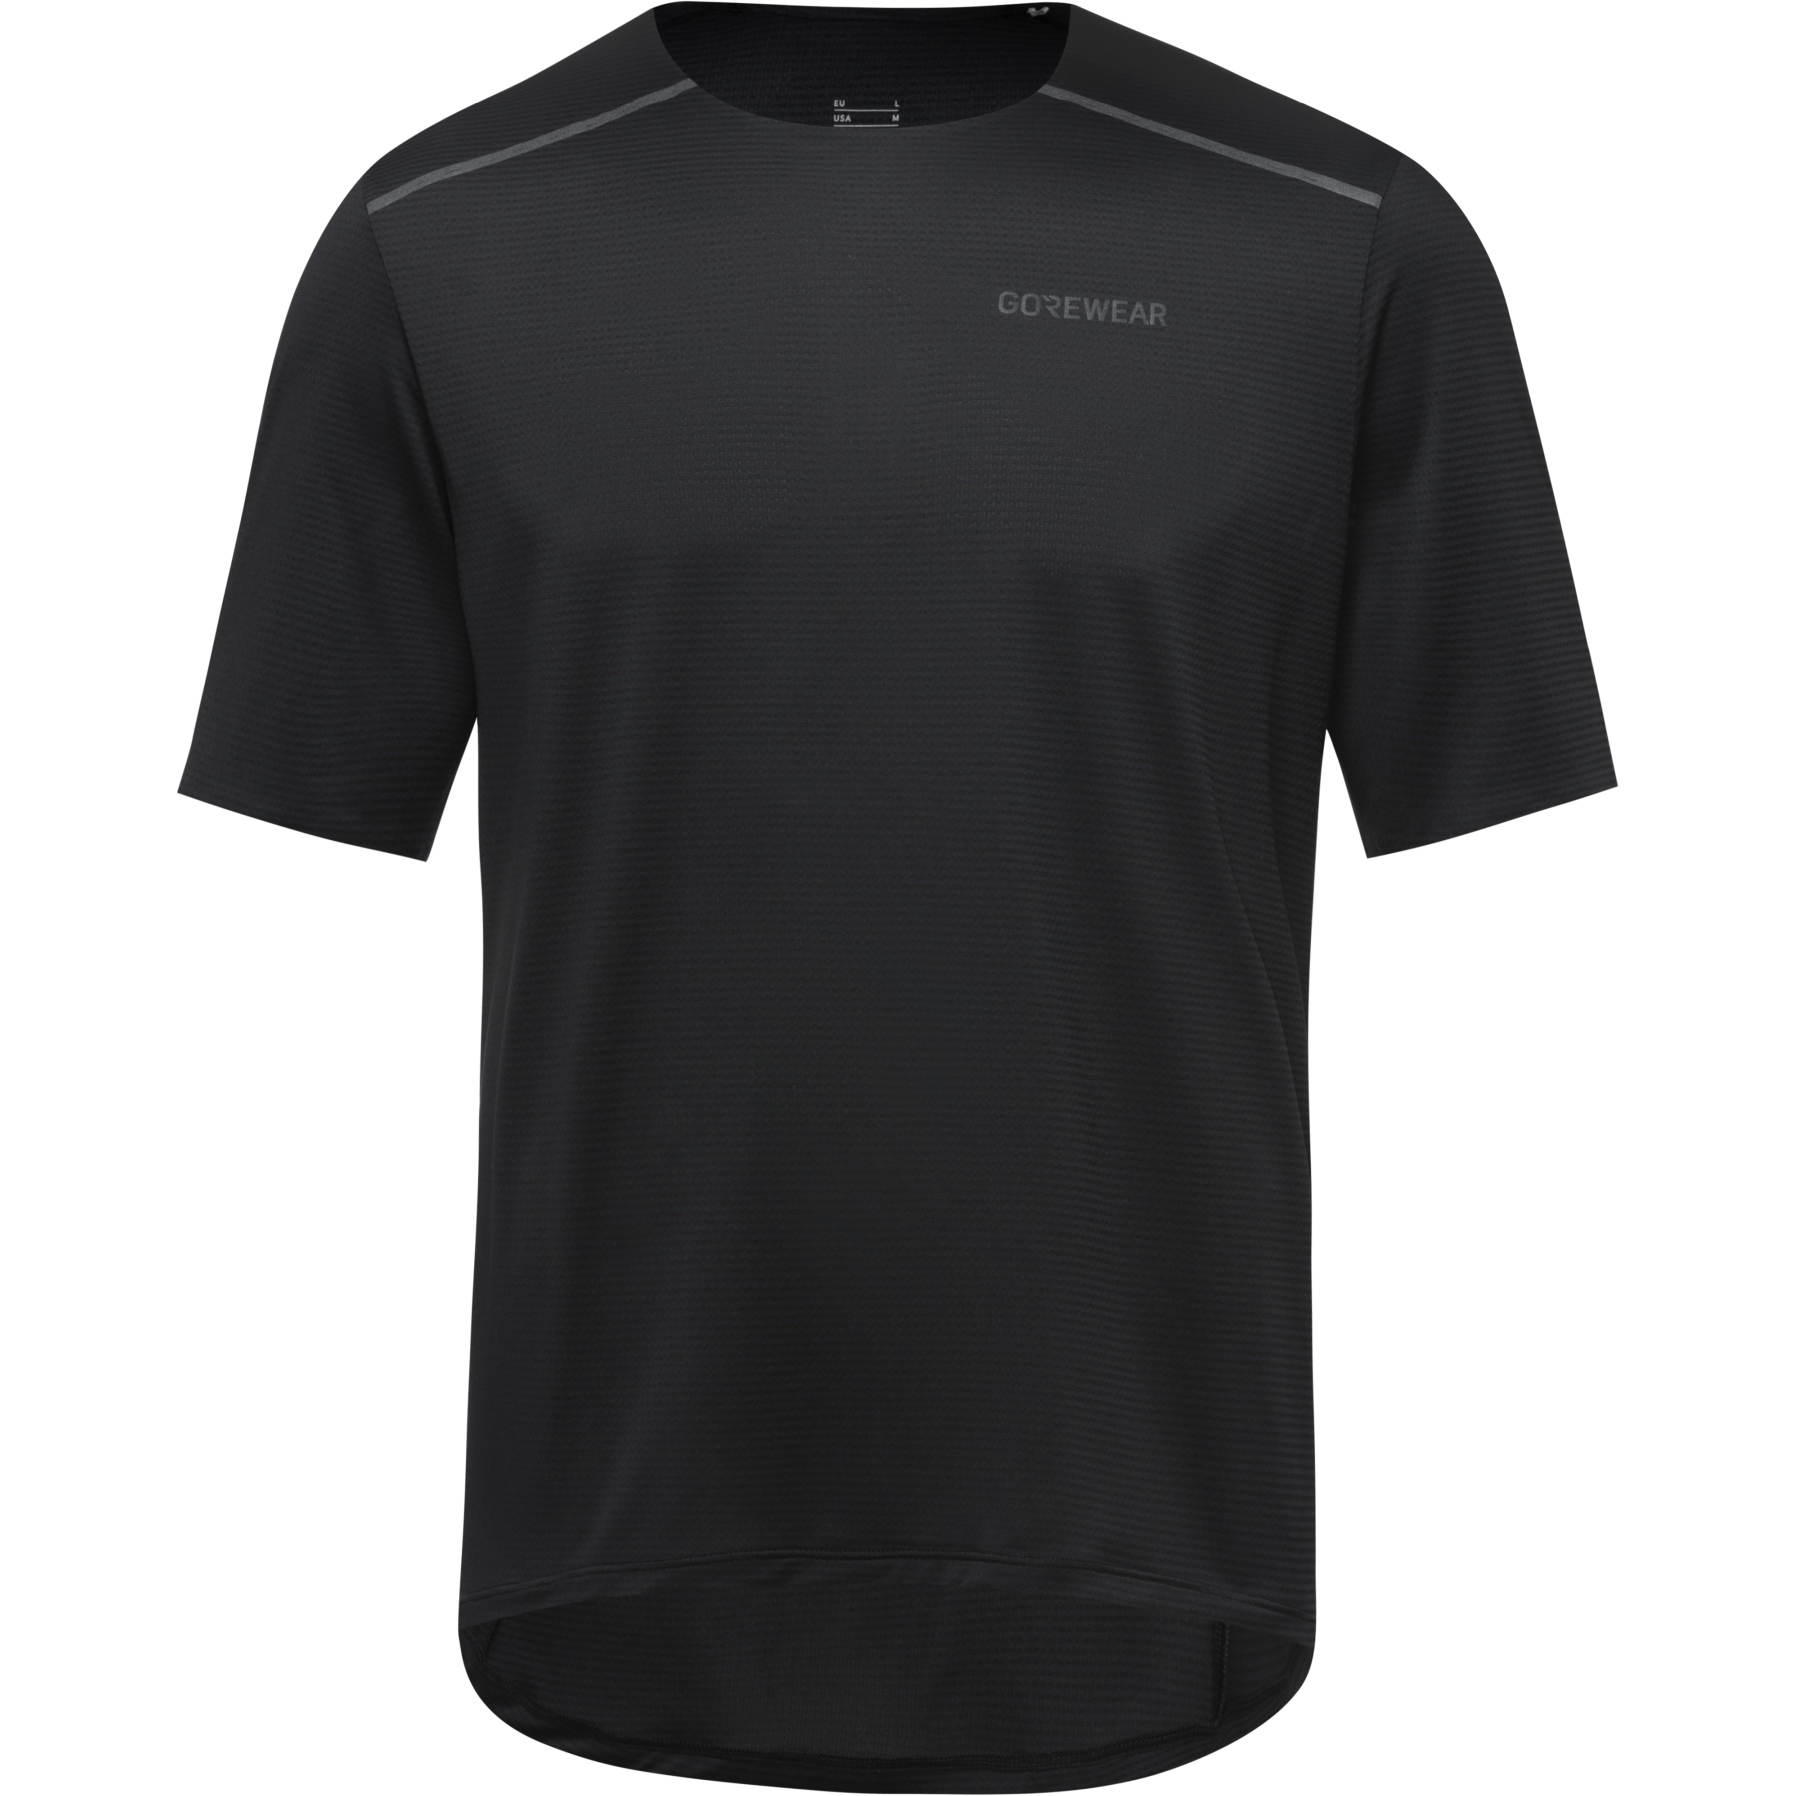 Produktbild von GOREWEAR Contest 2.0 T-Shirt Herren - schwarz 9900